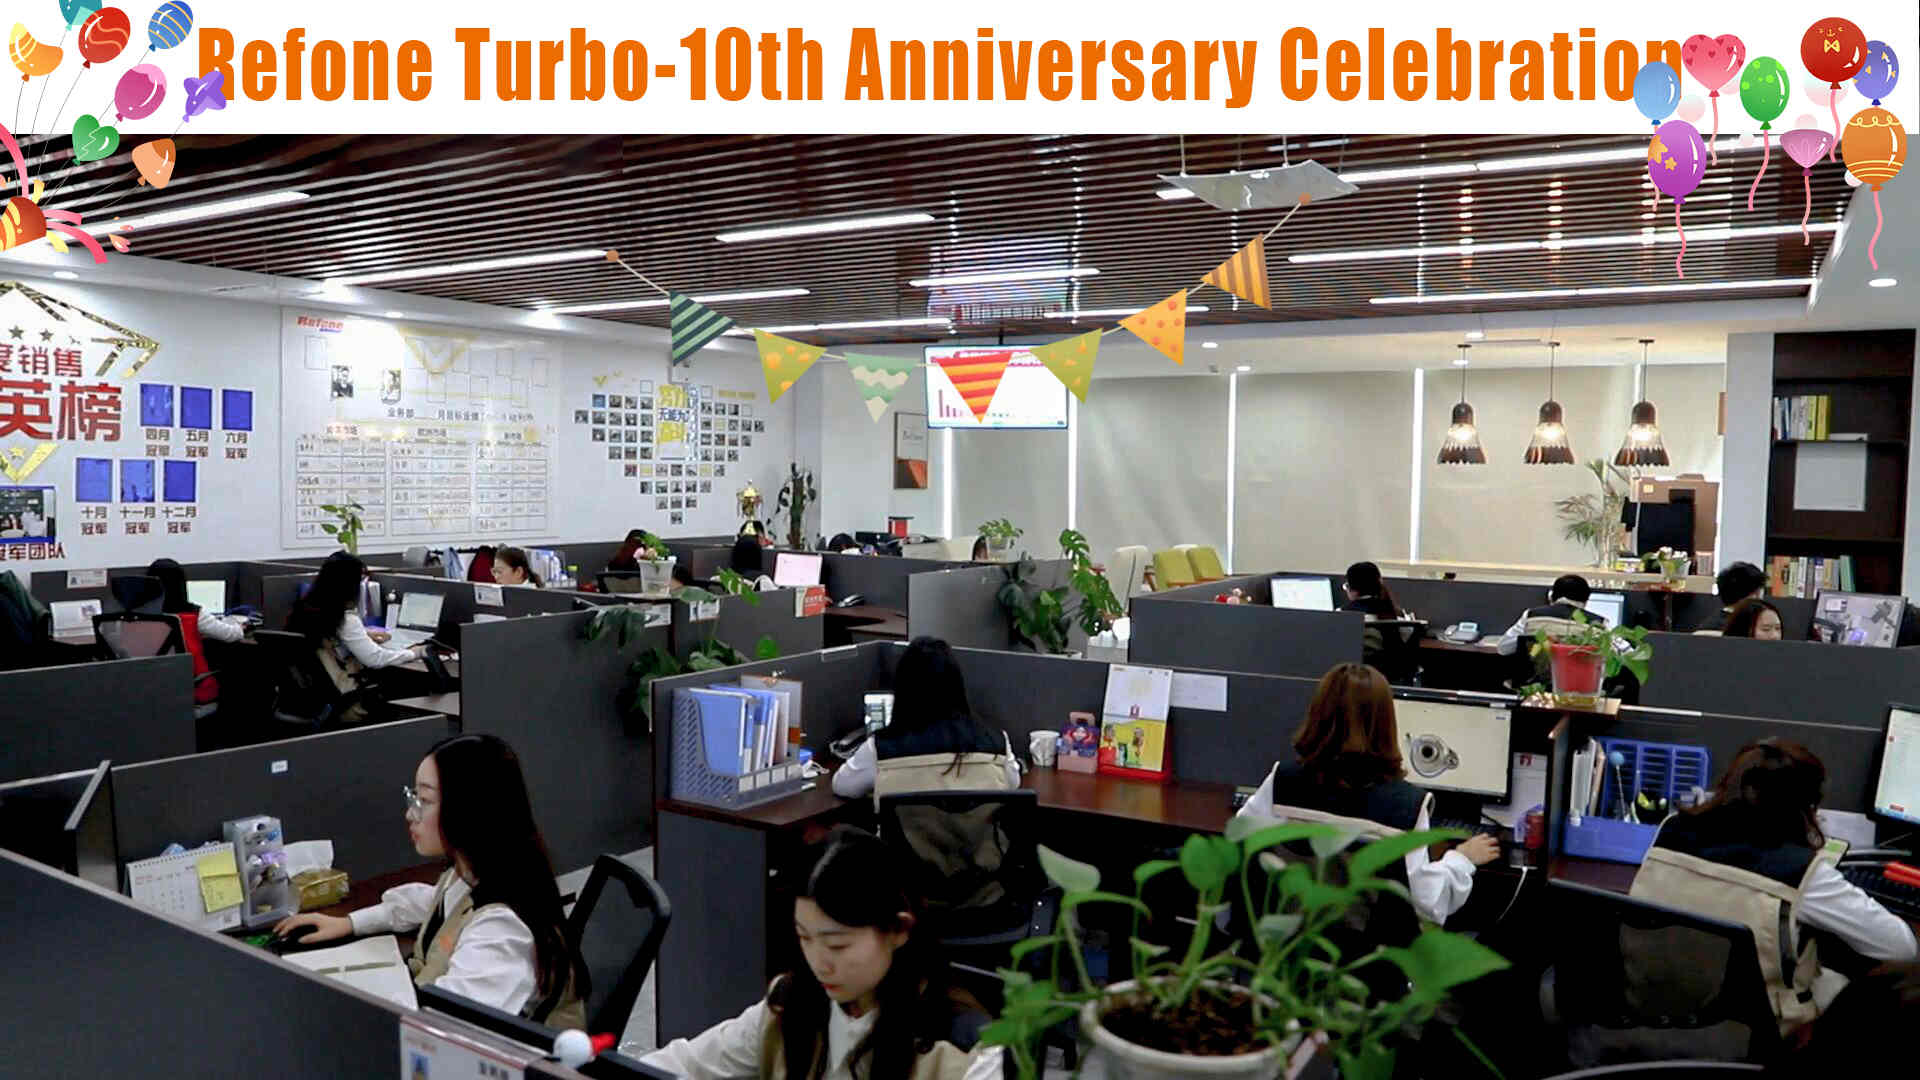 الاحتفال بالذكرى العاشرة لـ Refone Turbo